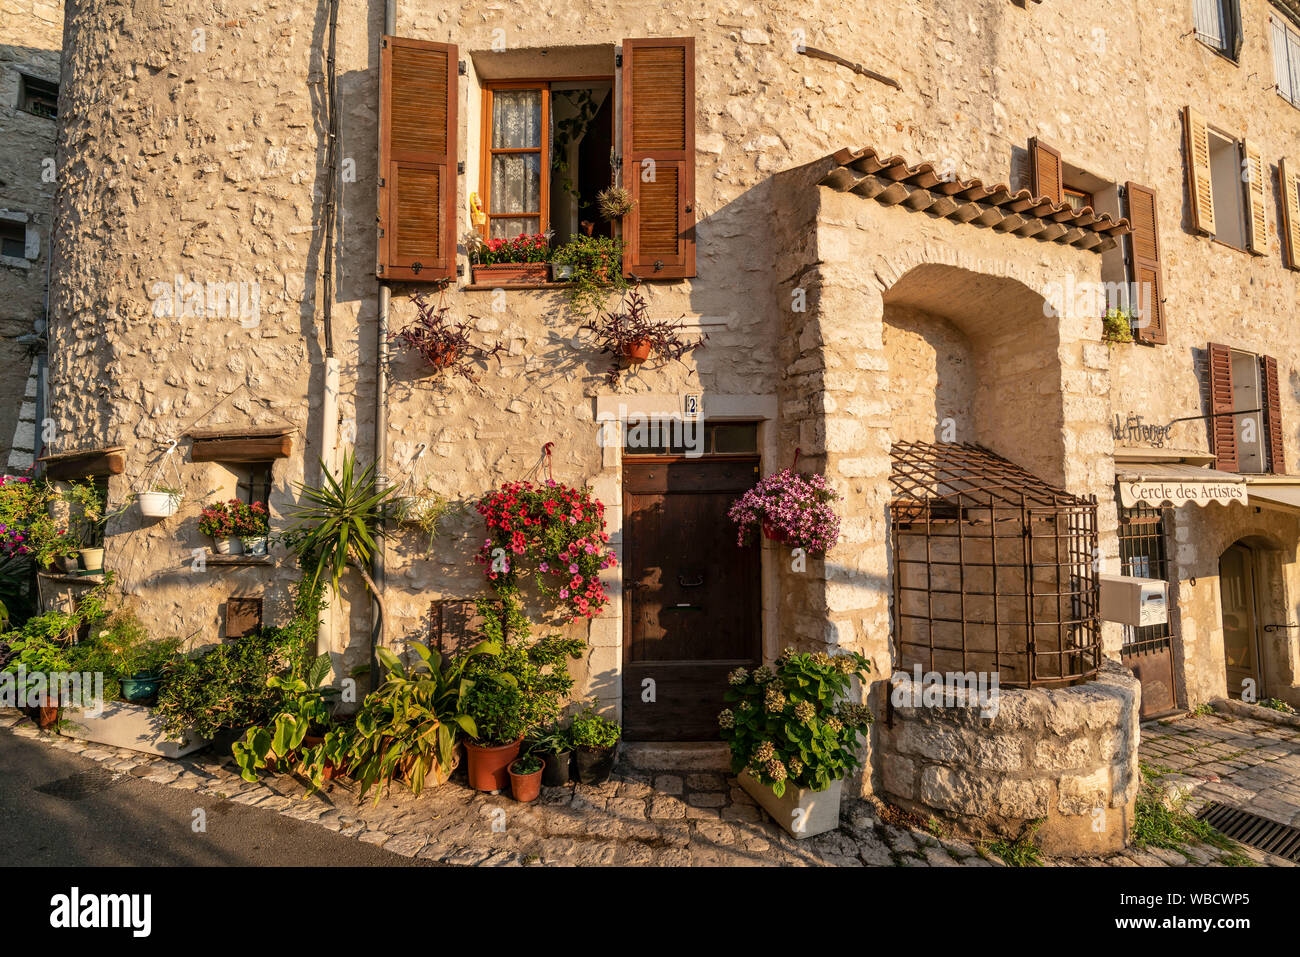 Saint-Paul-de-Vence, facade with flowers, Alpes-Maritimes, Provence-Alpes-Côte d’Azur, france Stock Photo